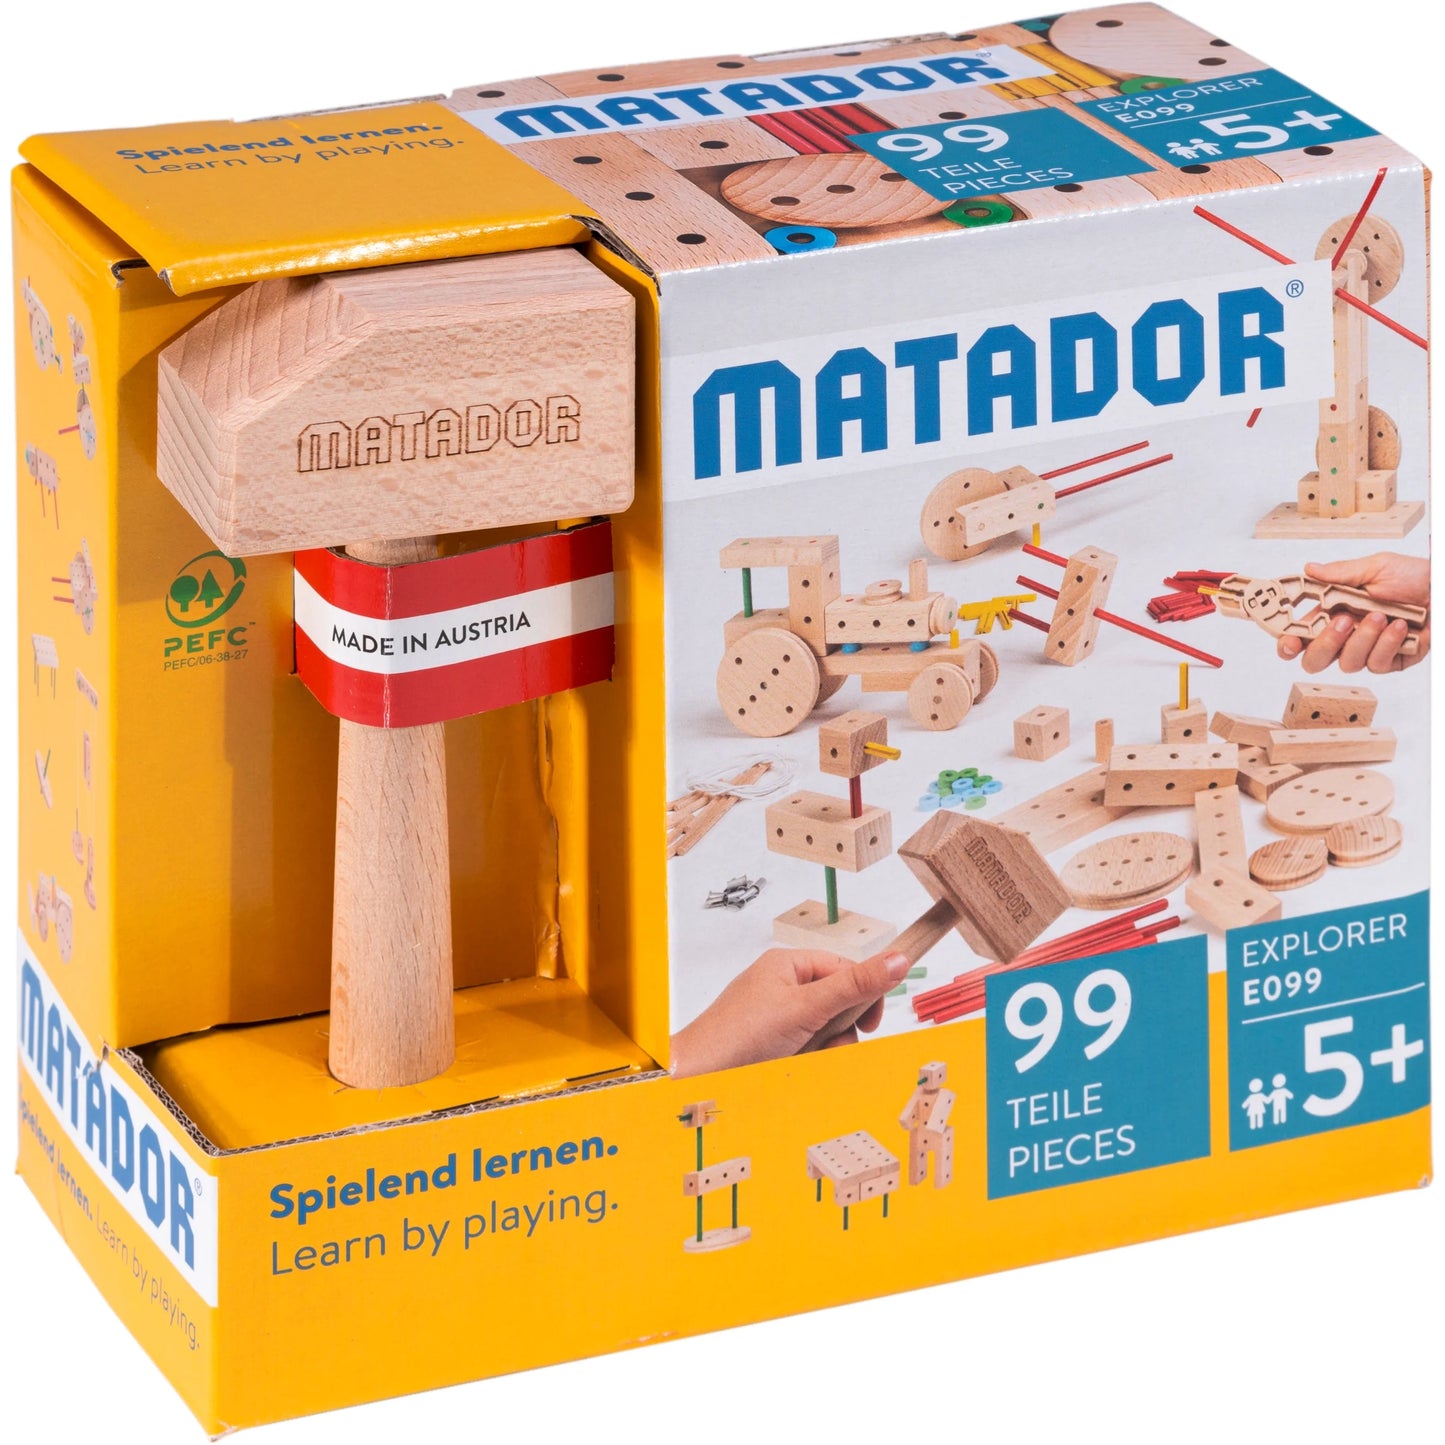 Matador Explorer 5+ E099